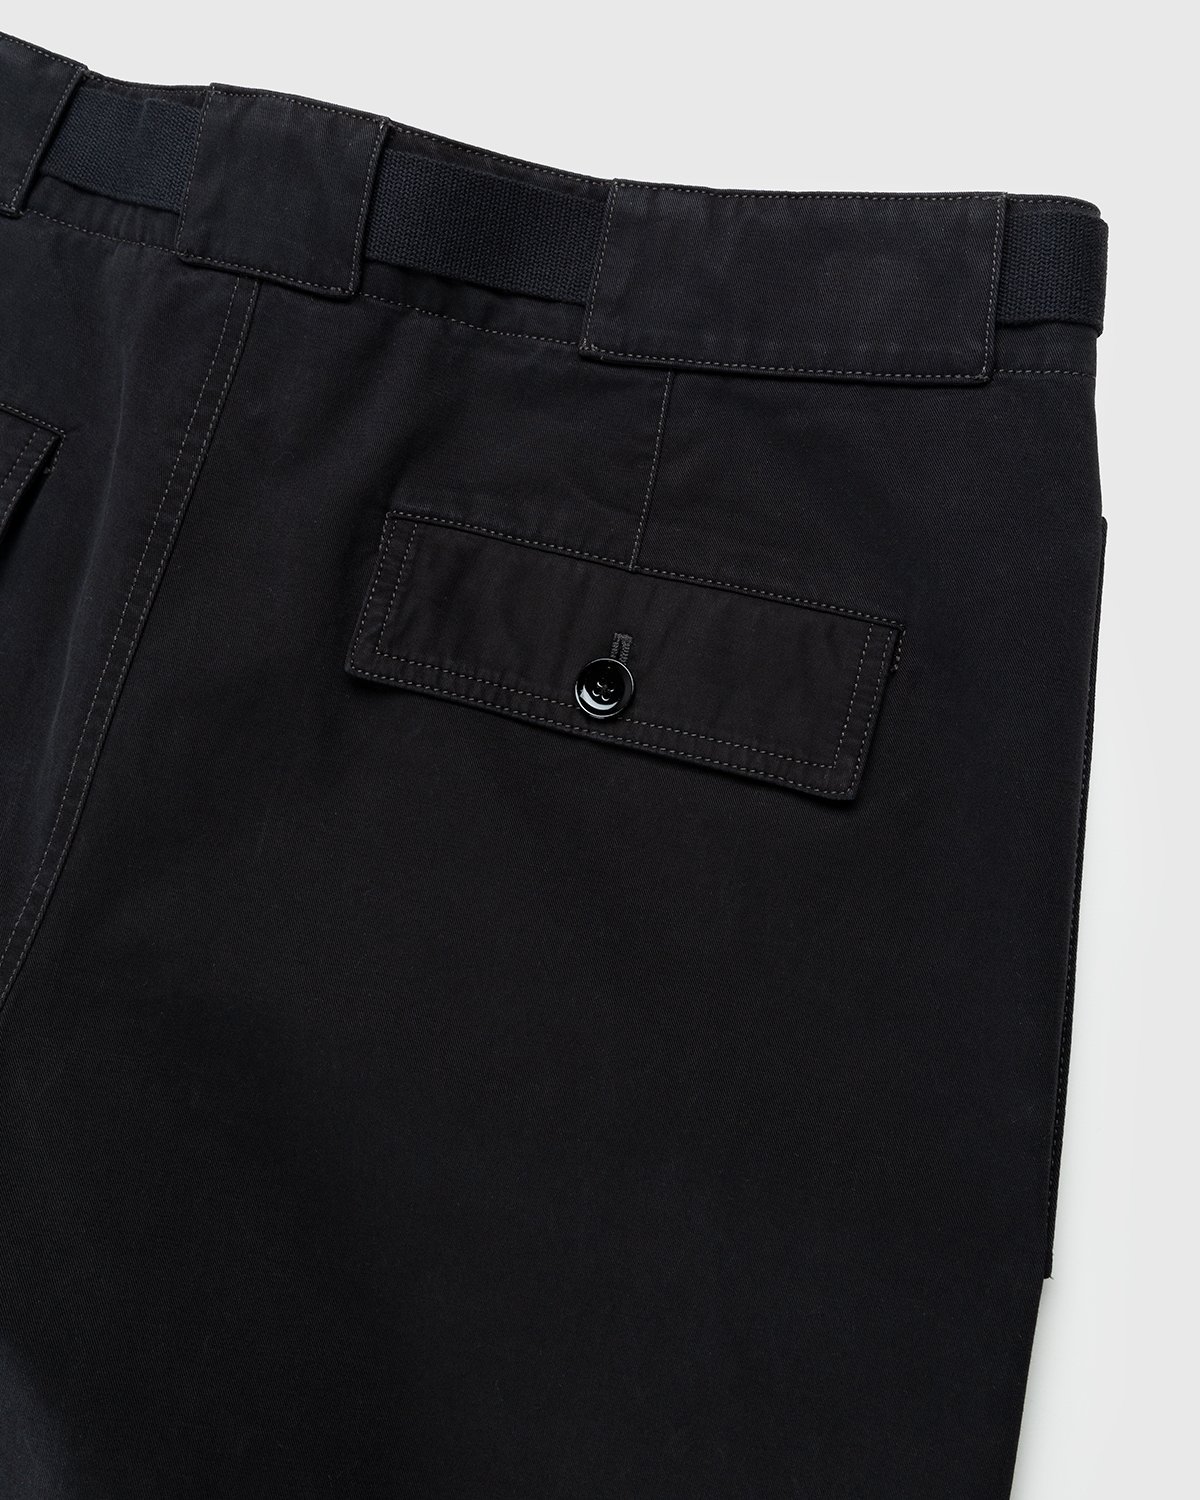 Lemaire - Utility Pants Black - Clothing - Black - Image 3